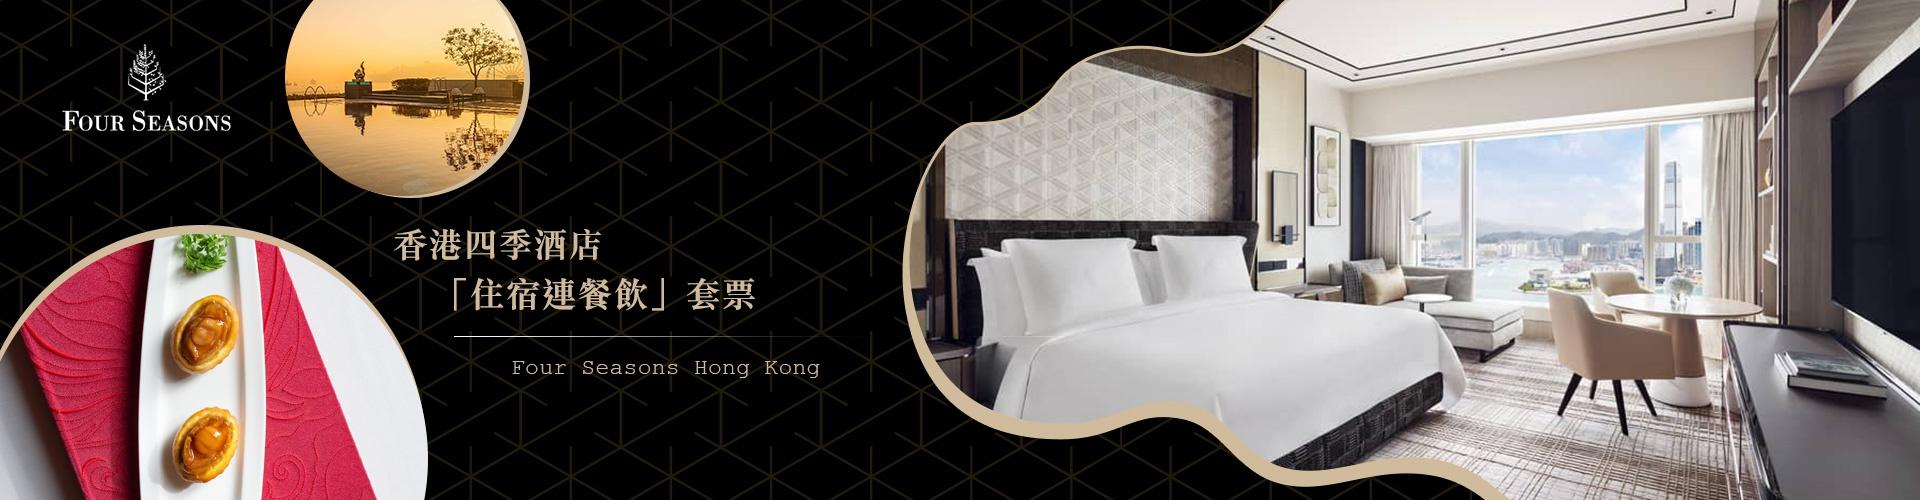 【低至47折】香港四季酒店 Four Seasons Hong Kong Hotel｜餐飲住宿優惠